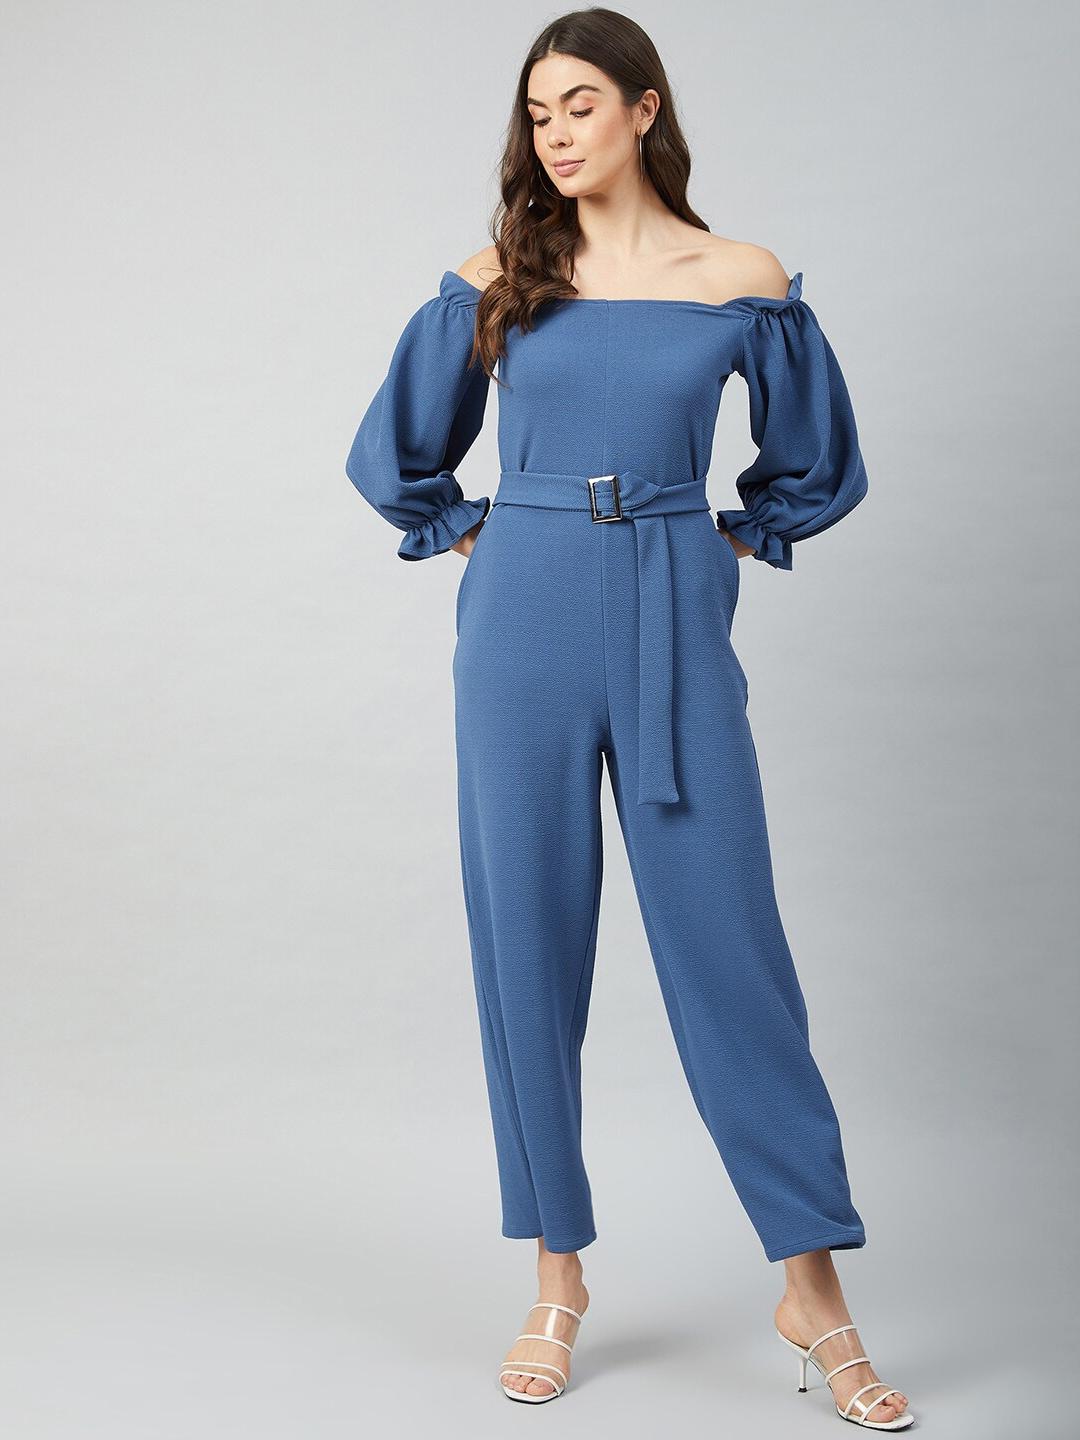 athena-women-blue-solid-jumpsuit